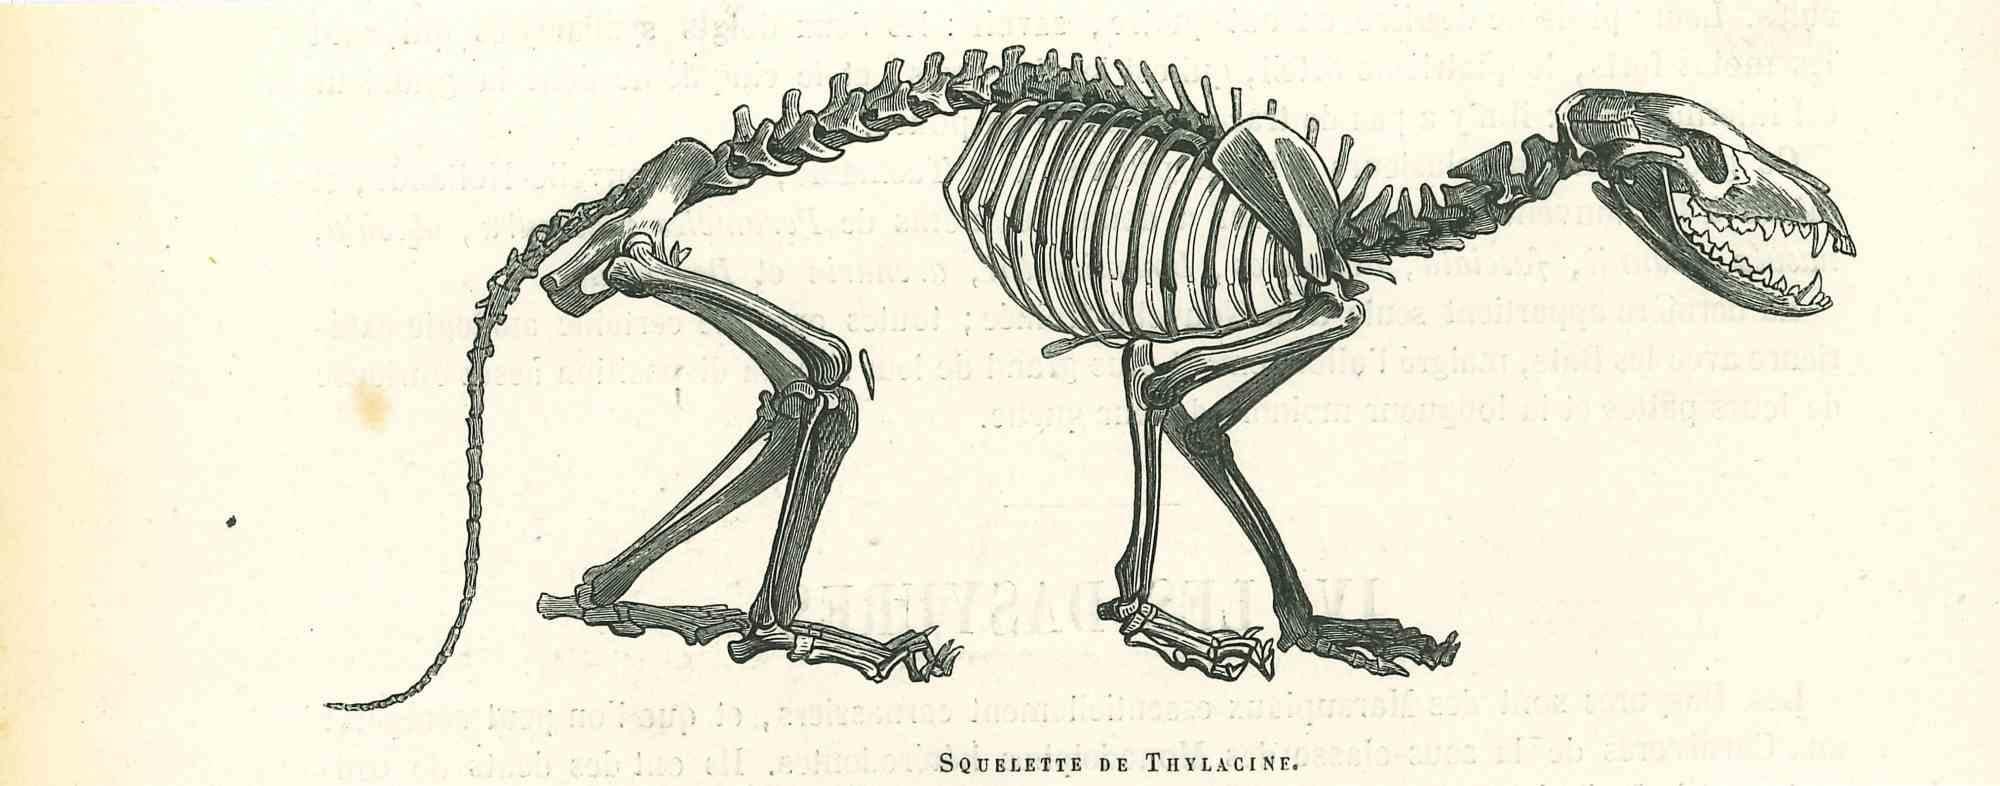 mongoose skeleton